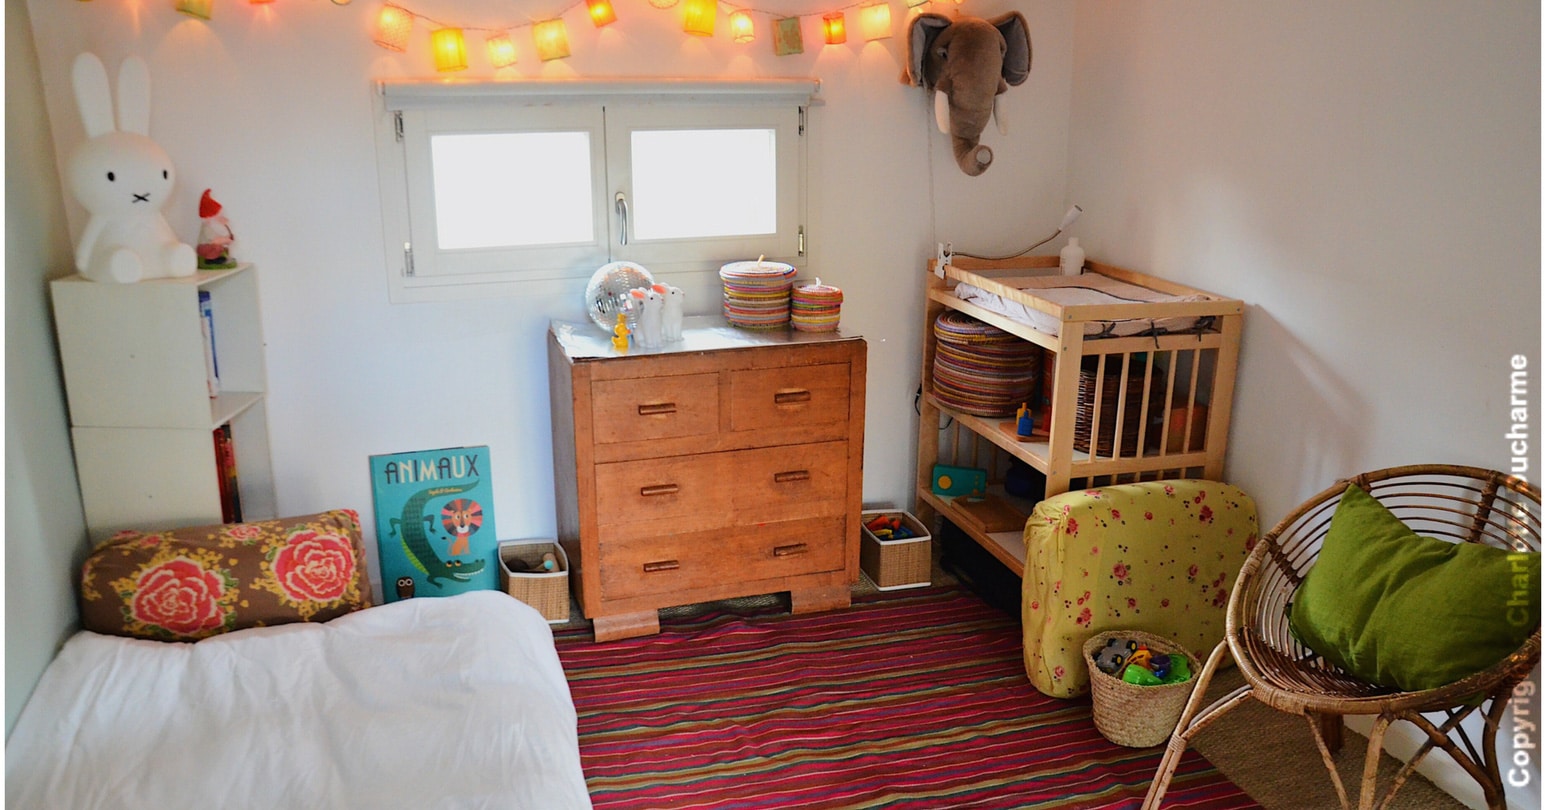 Comment réussir à aménager une chambre enfant complete